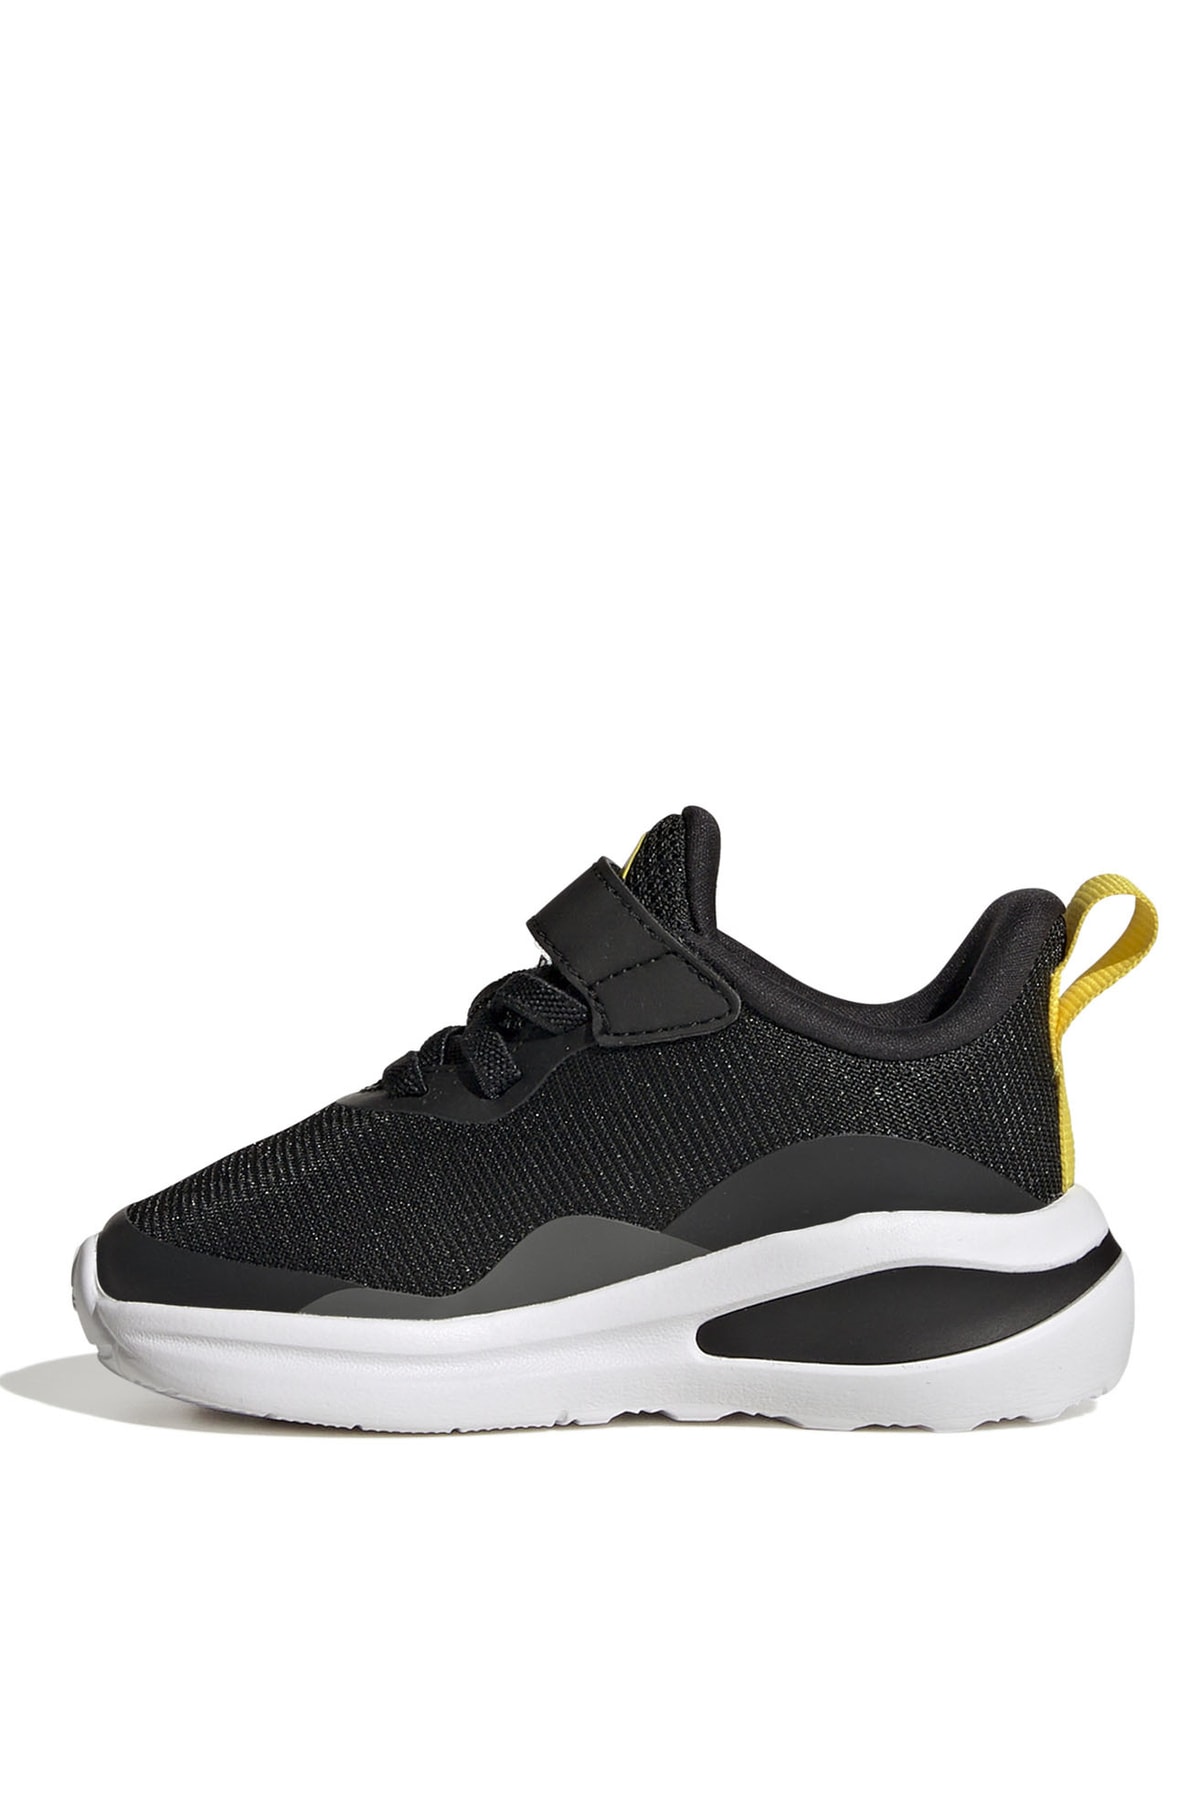 adidas Siyah - Karbon Bebek Yürüyüş Ayakkabısı Gx7141 Fortarun El I